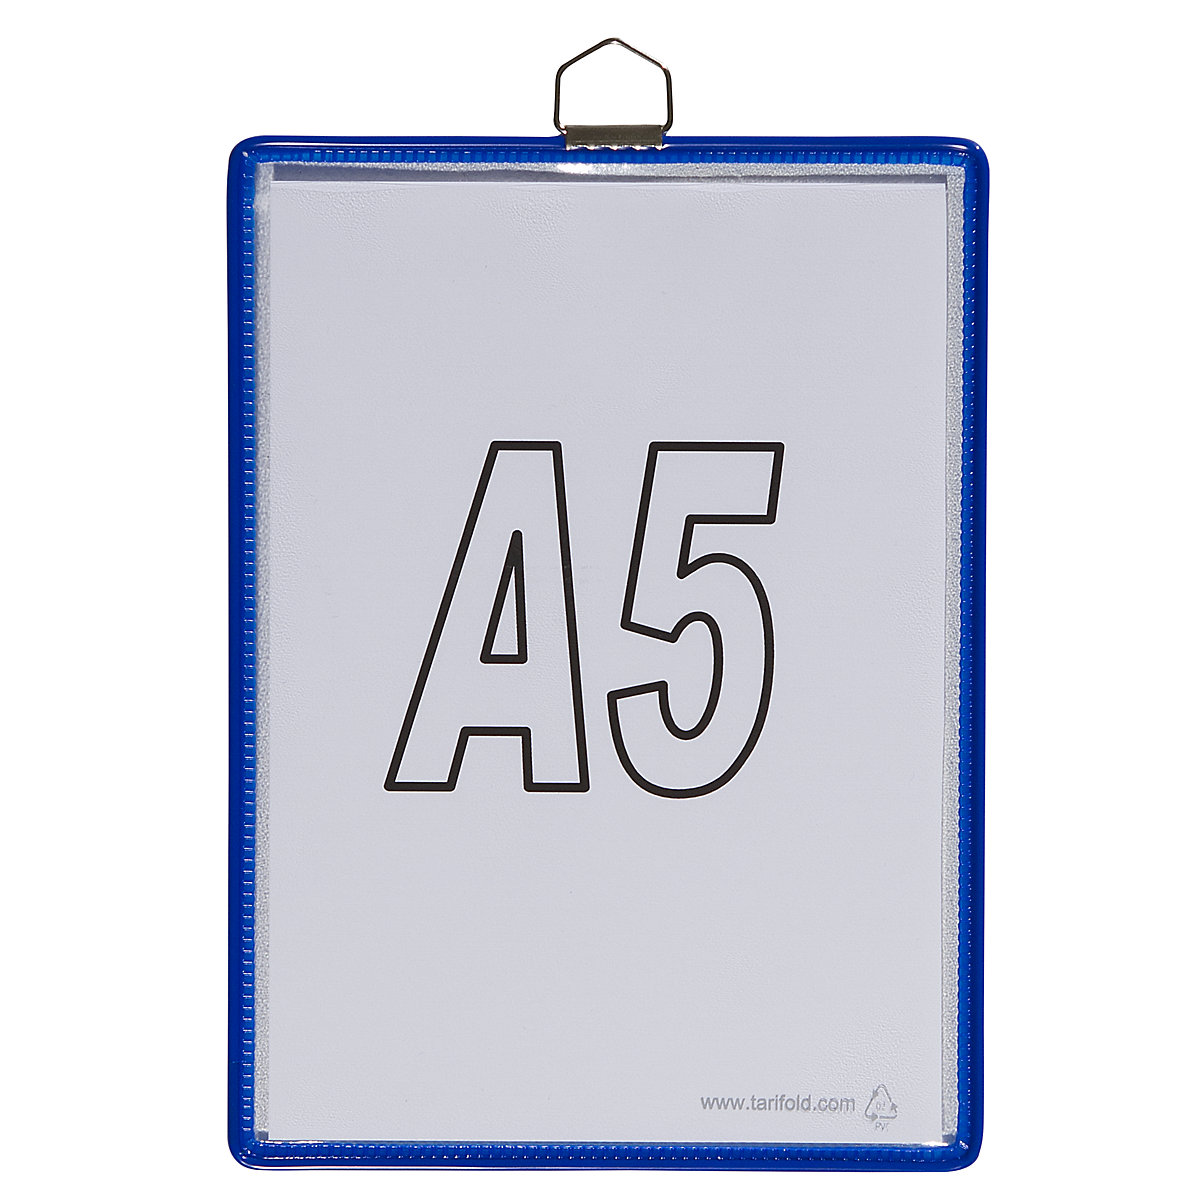 Závěsná průhledná kapsa – Tarifold, pro formát DIN A5, modrá, bal.j. 10 ks-4